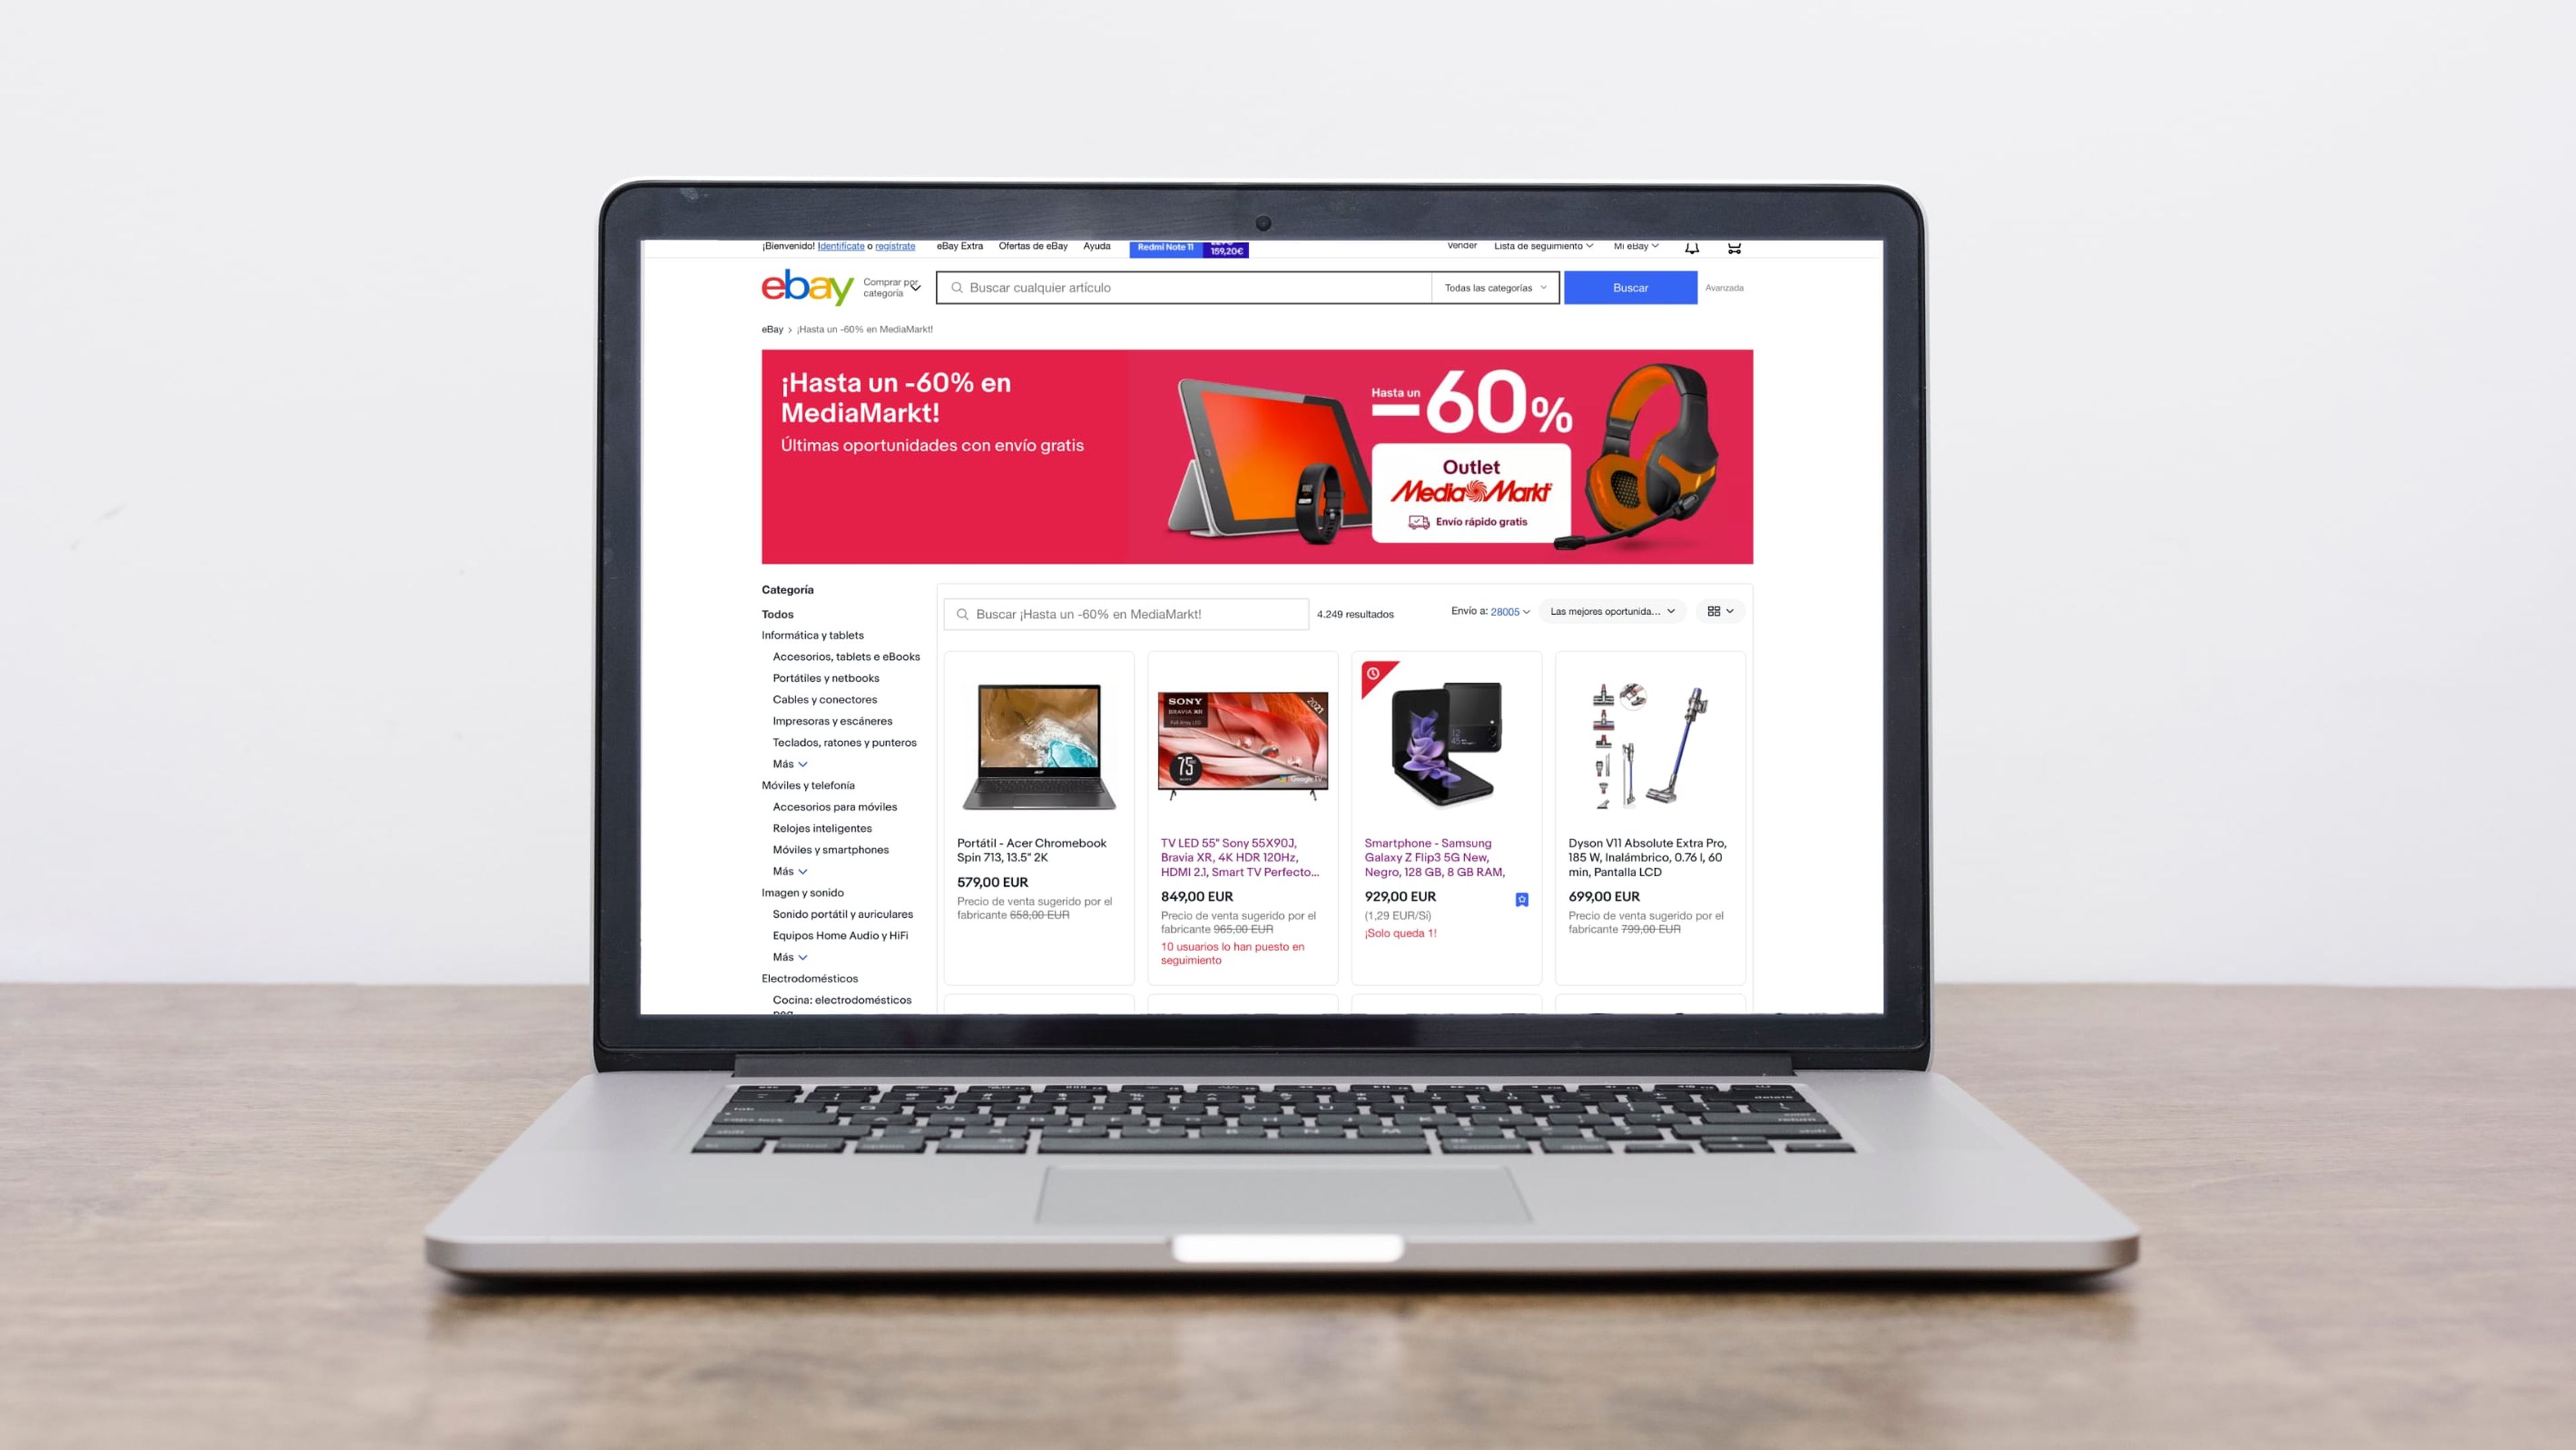 calibre Sucio Santuario Liquidación en productos de Media Markt en eBay: hasta un 60% de descuento  | Computer Hoy